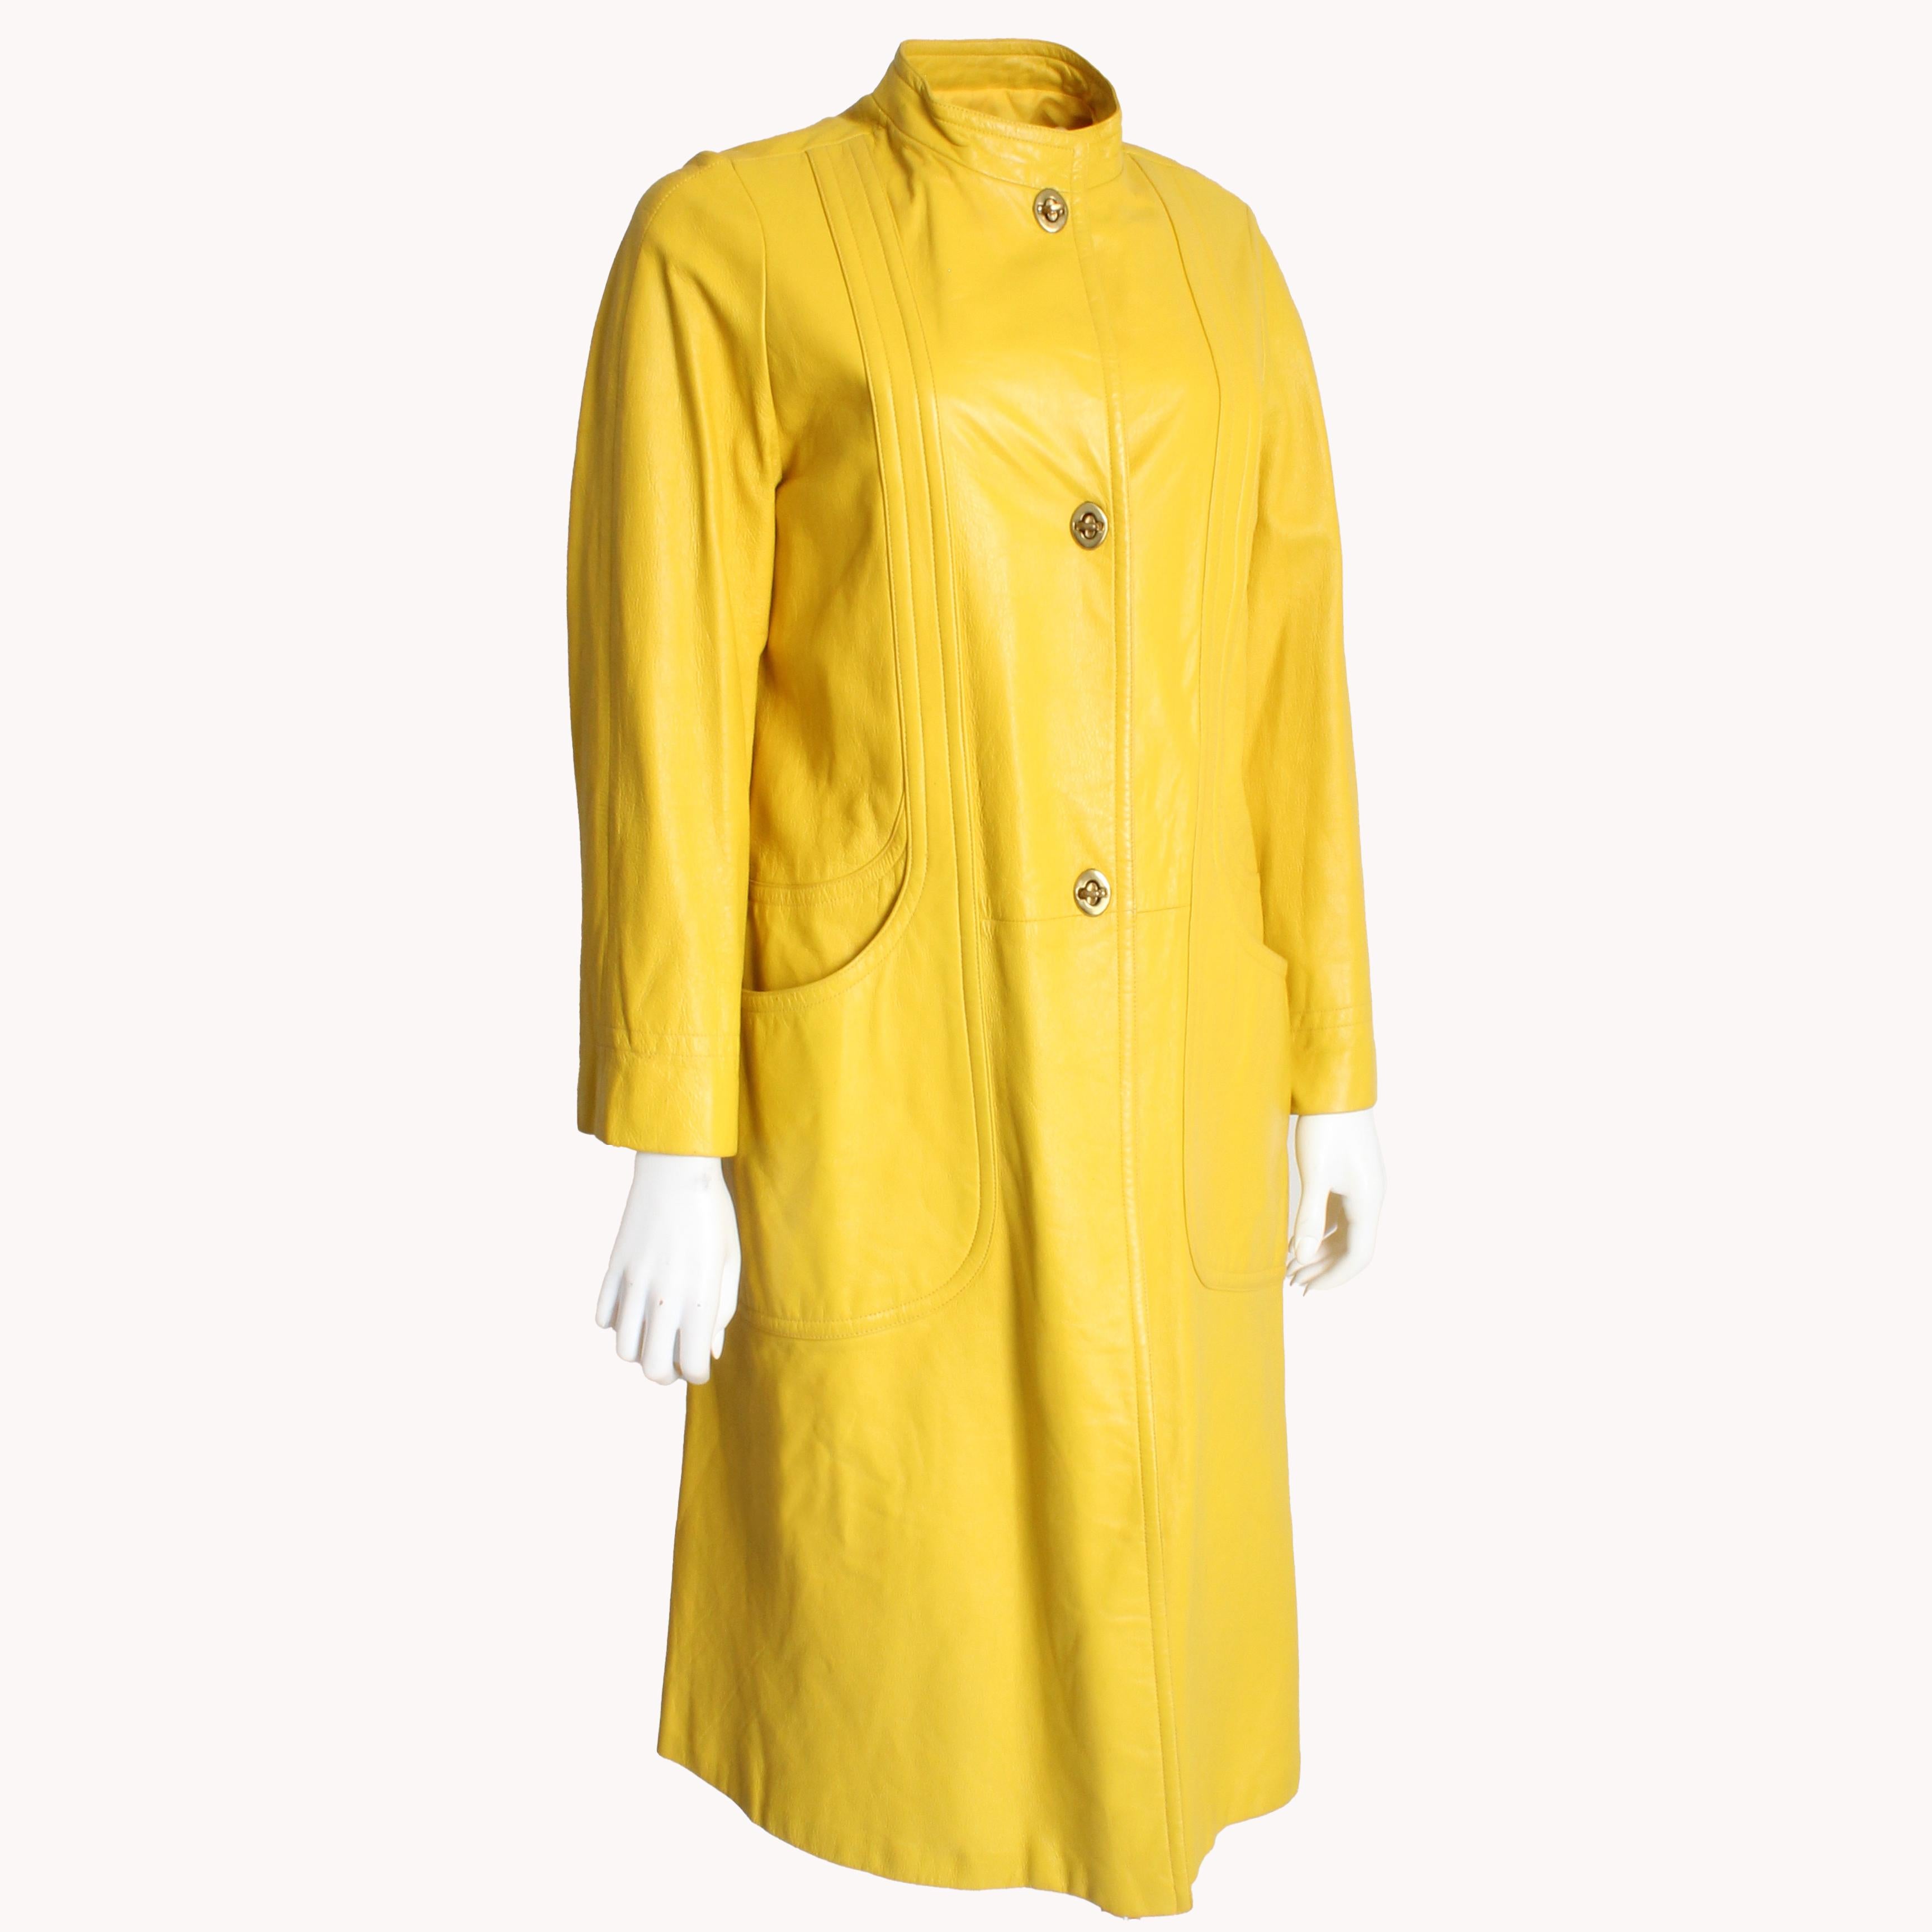 Authentique manteau en cuir jaune vintage, d'occasion, de Bonnie Cashin pour Sills, très probablement dans les années 1960.  Réalisé en cuir Brilliante, il est doté de fermetures à tour de bras en laiton et de poches en demi-lune sur chaque hanche !